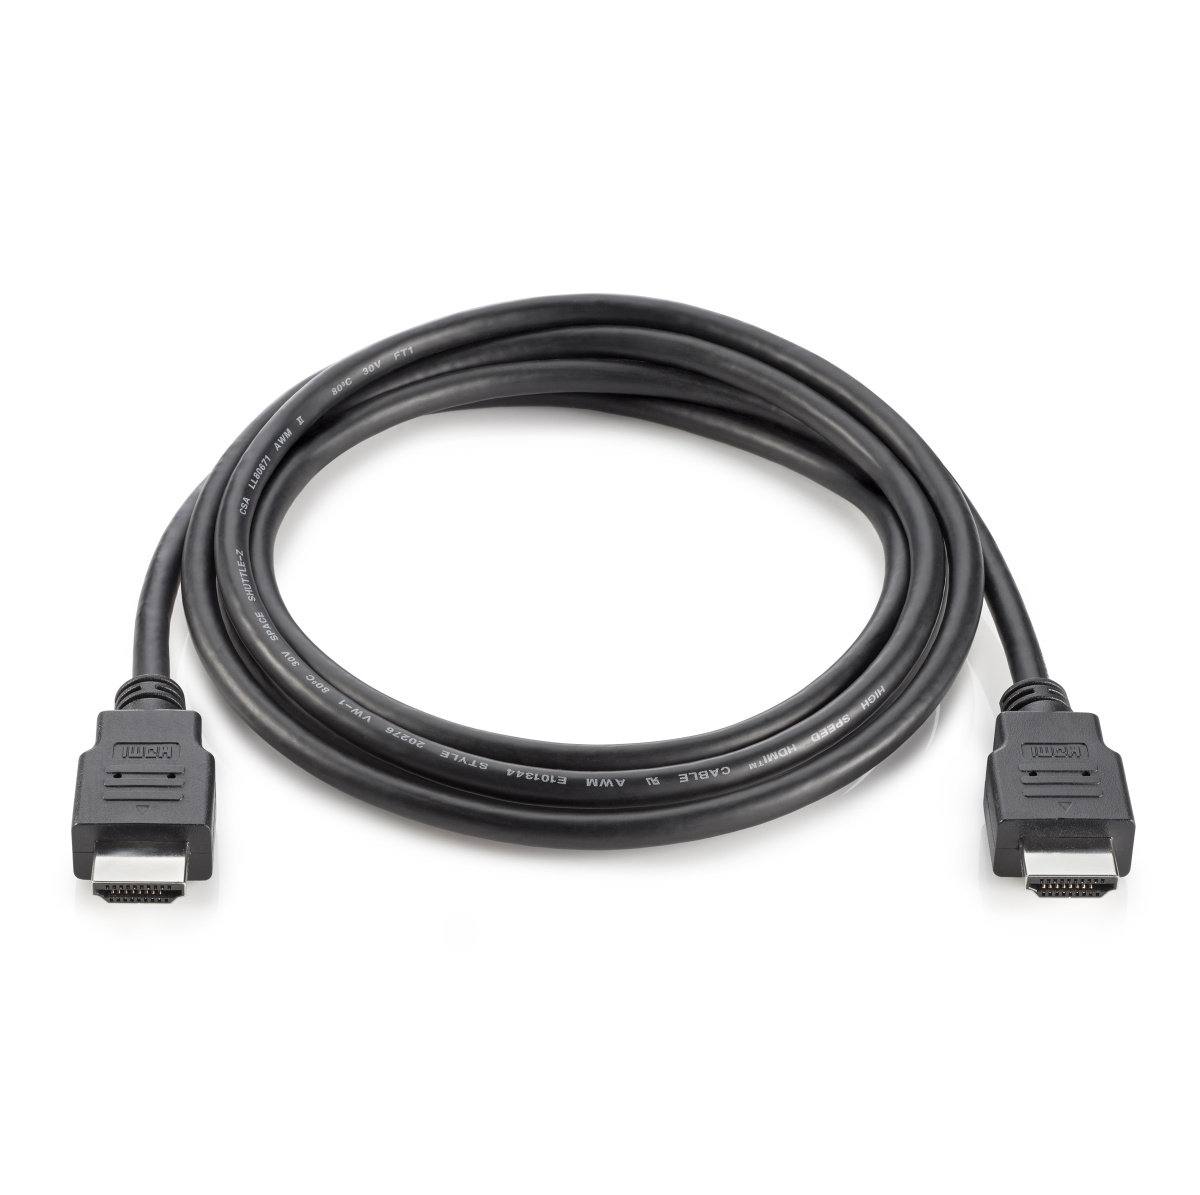 HP HDMI kábel - 1,8 m (T6F94AA)